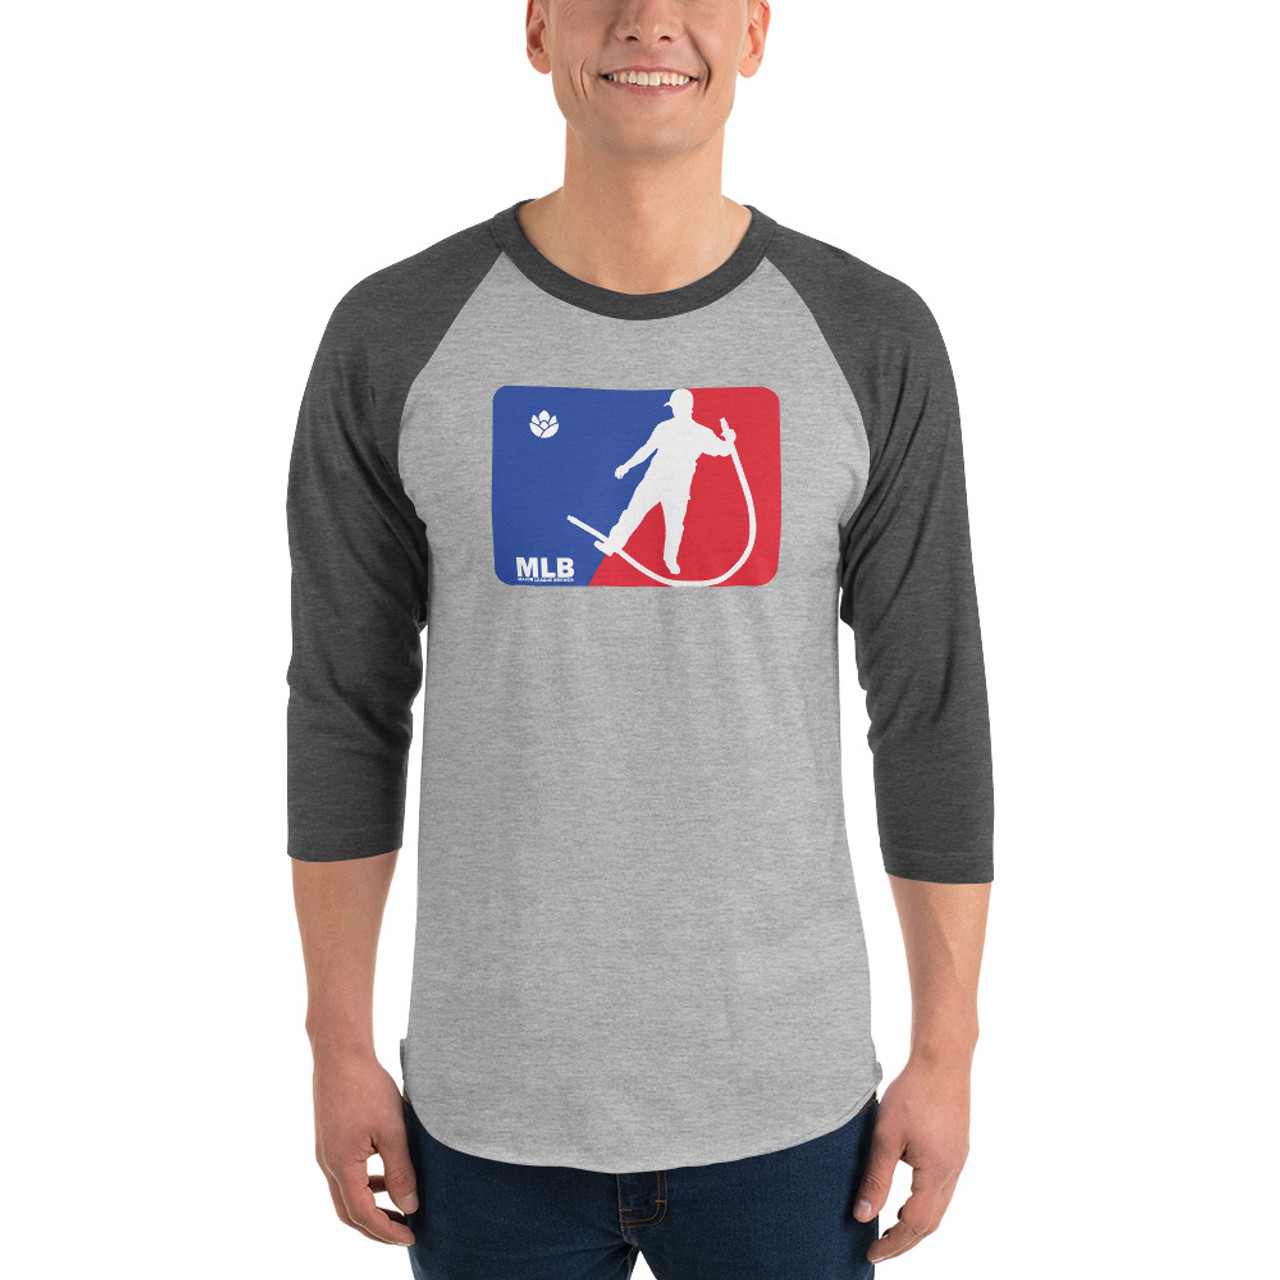 mlb baseball tshirt